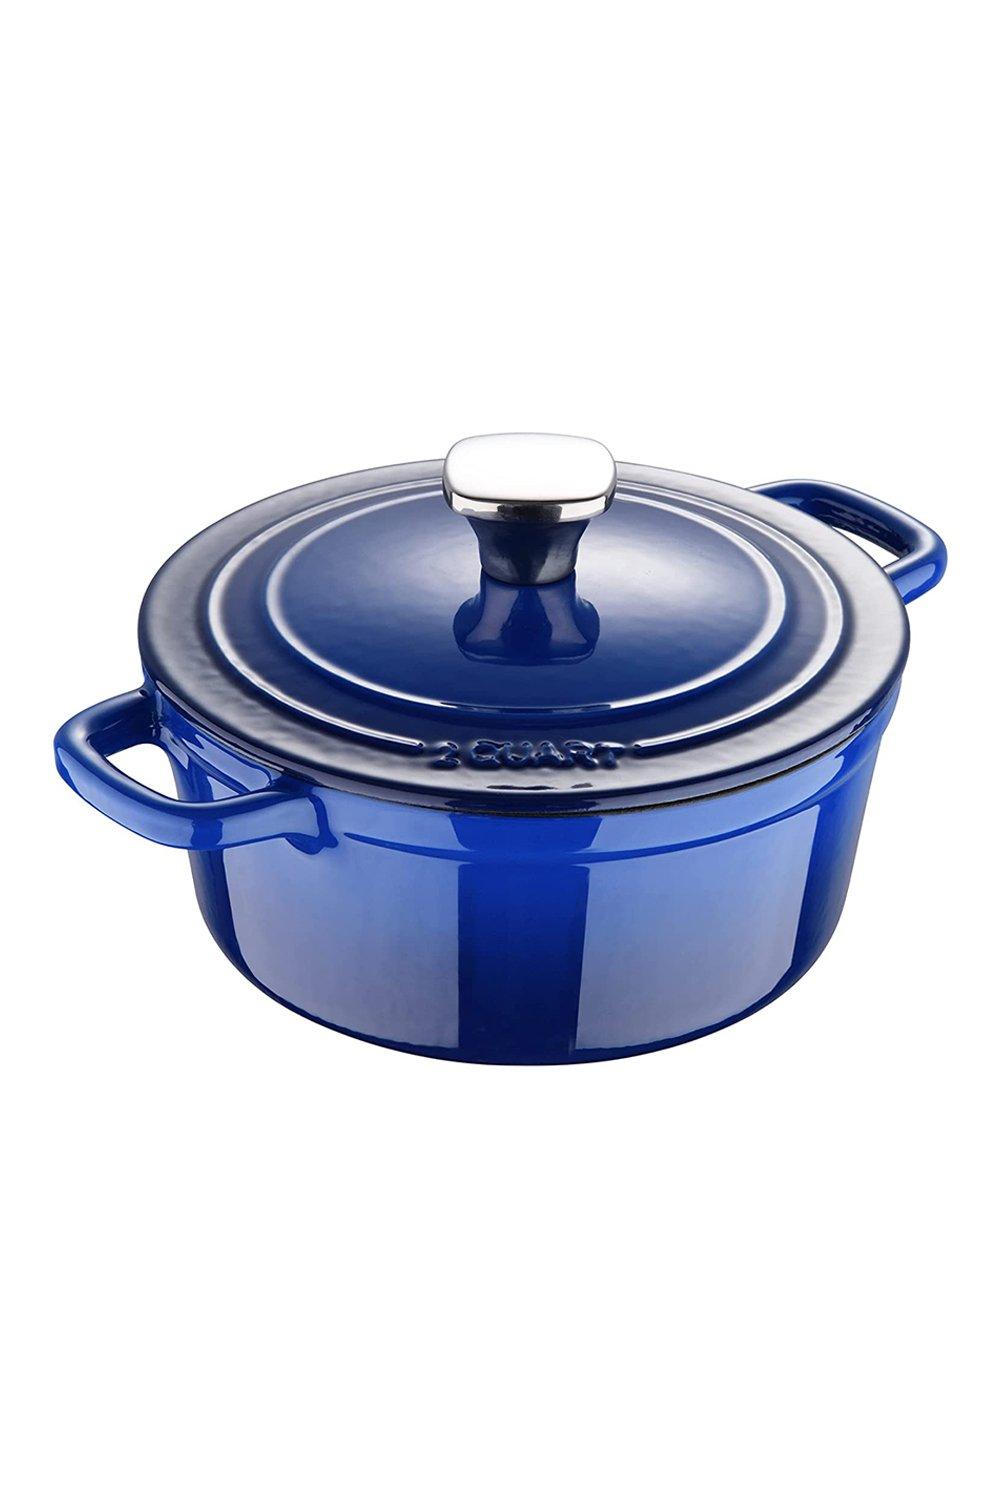 Pots & Pans | Enamel Cast Iron Casserole Dish with Lid 1.9L Blue ...